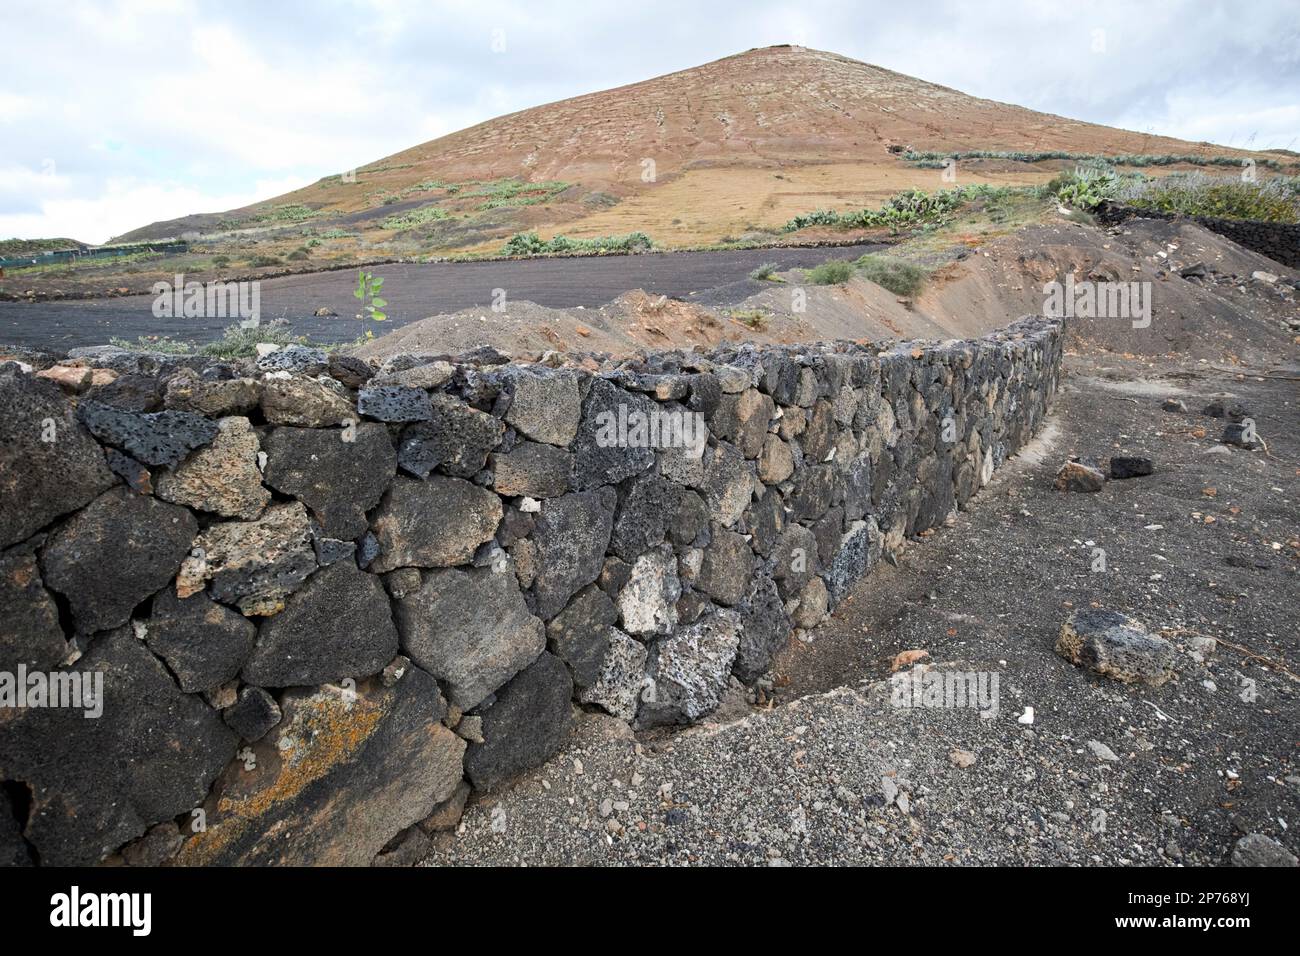 Trockene Steinmauer aus vulkanischem Gestein am Rand eines Feldes in der Nähe eines Vulkans auf Lanzarote, Kanarische Inseln, Spanien Stockfoto